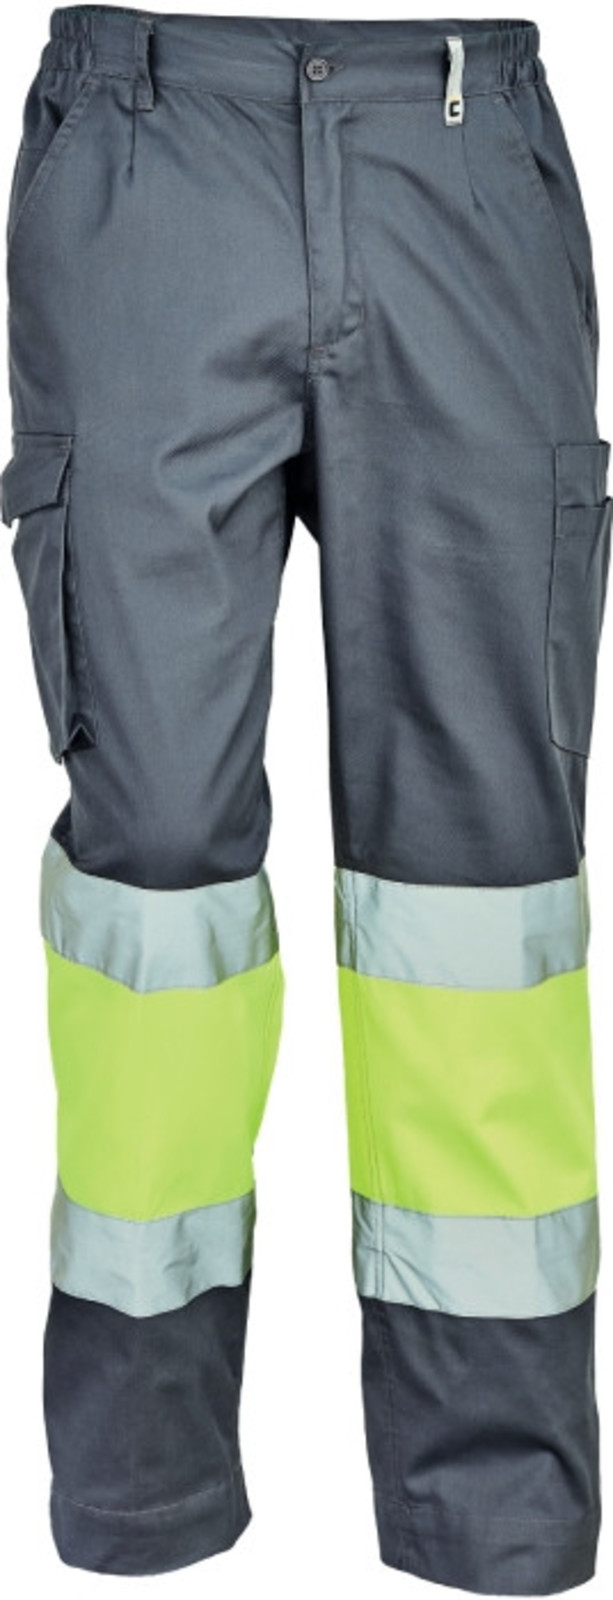 Pracovné reflexné nohavice Cerva Ciudades Bilbao HV - veľkosť: 50, farba: sivá/žltá